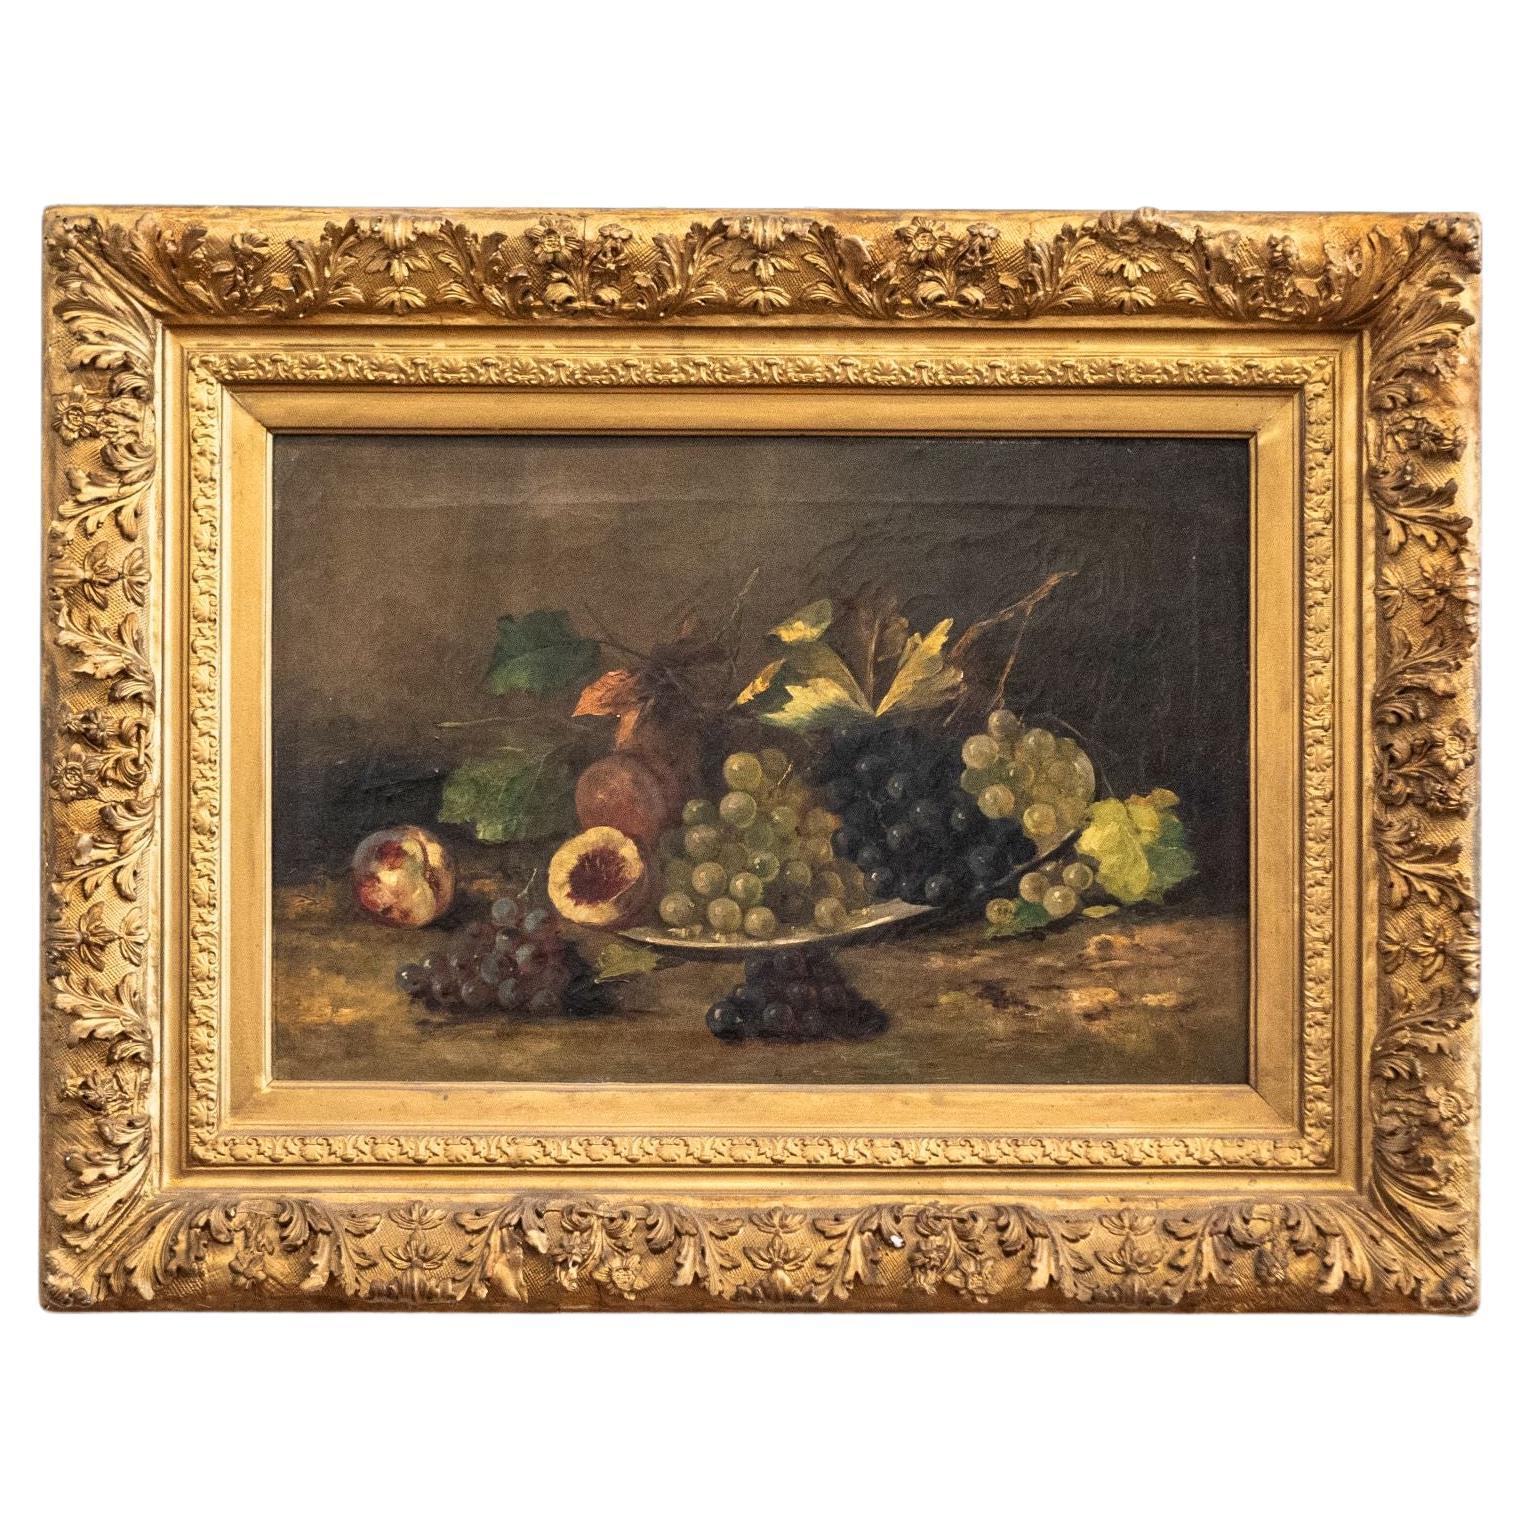 Huile sur toile du 19ème siècle encadrée de bois doré représentant des fruits